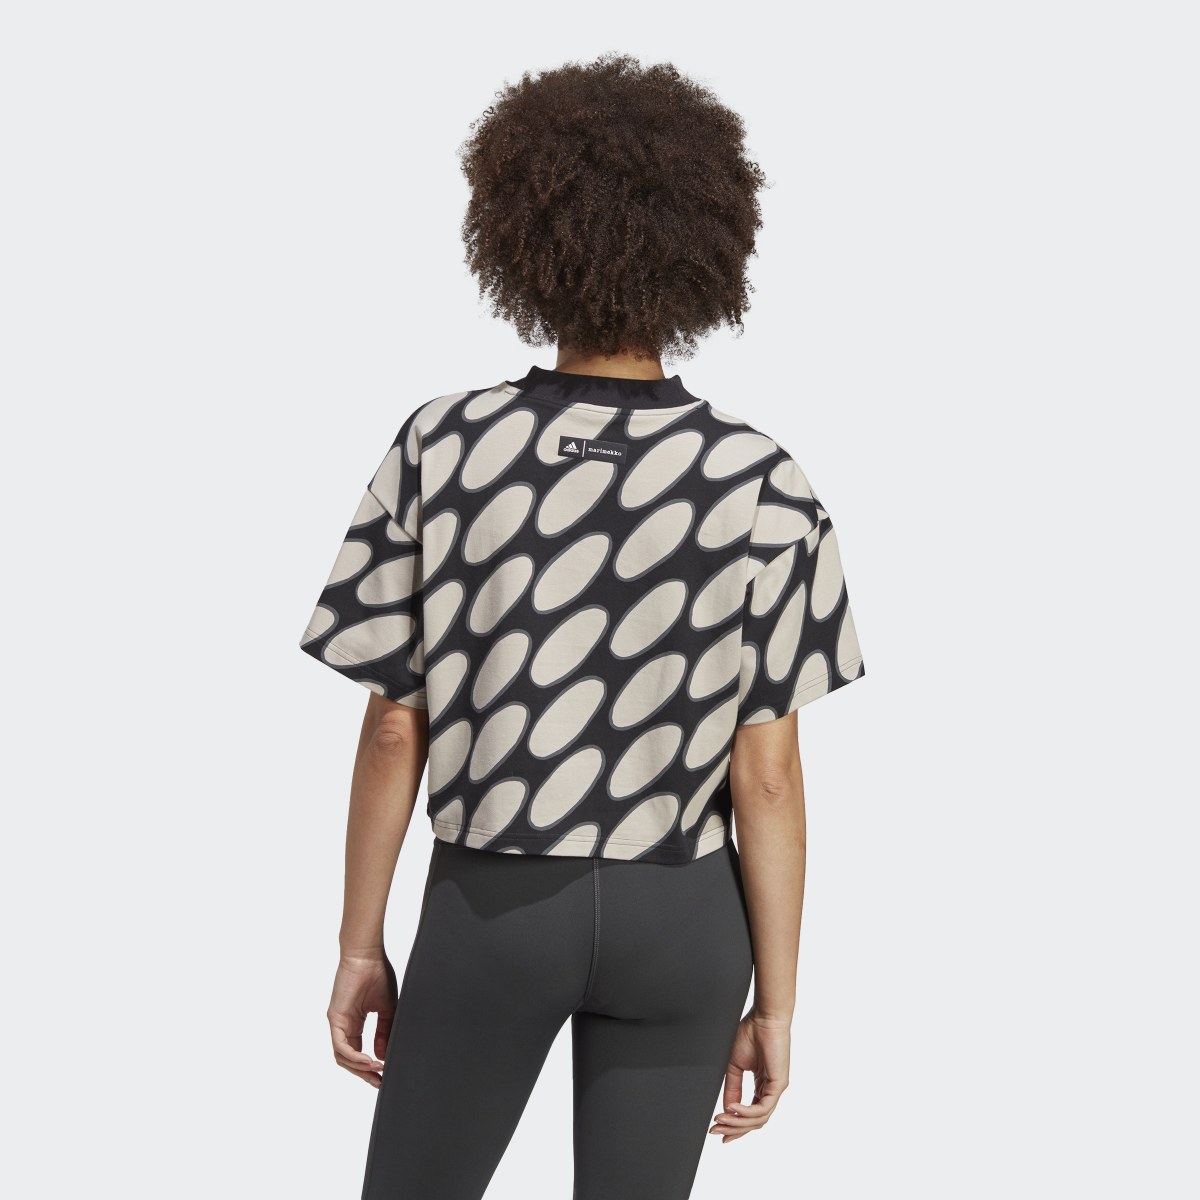 Adidas Marimekko Future Icons 3-Streifen T-Shirt. 4